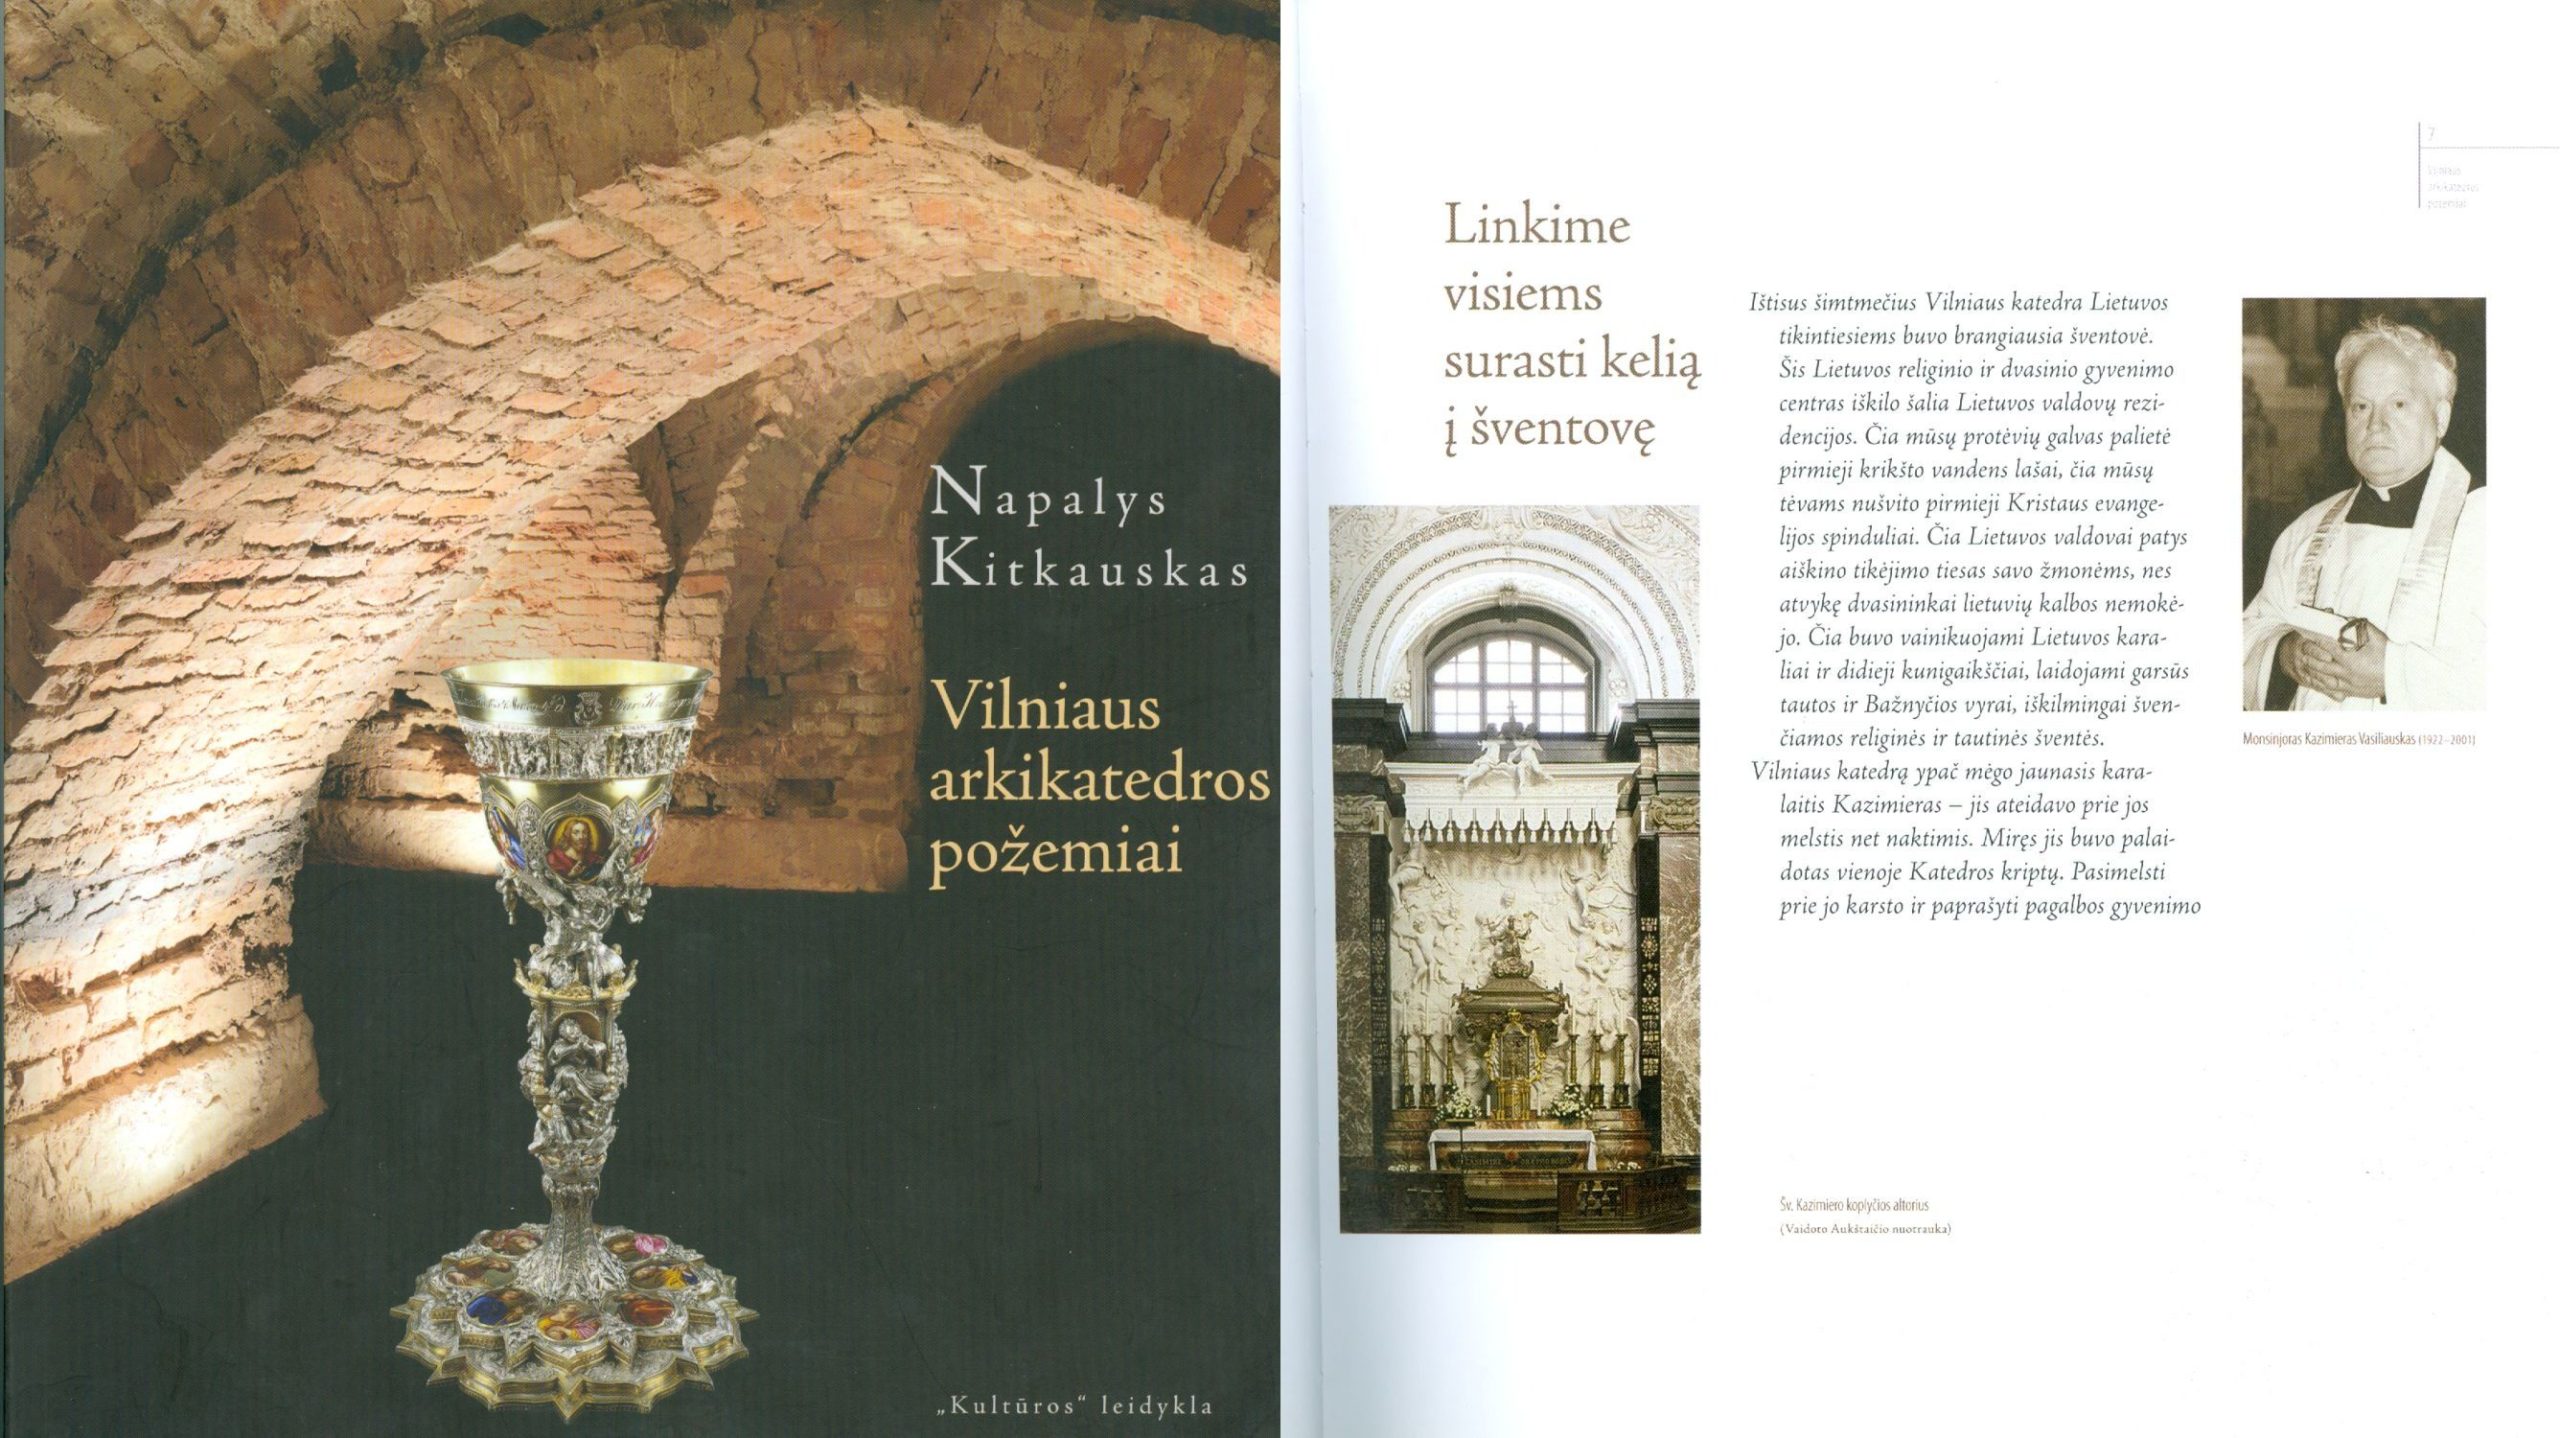 Vilniaus arkikatedros požemiai knygos viršelis